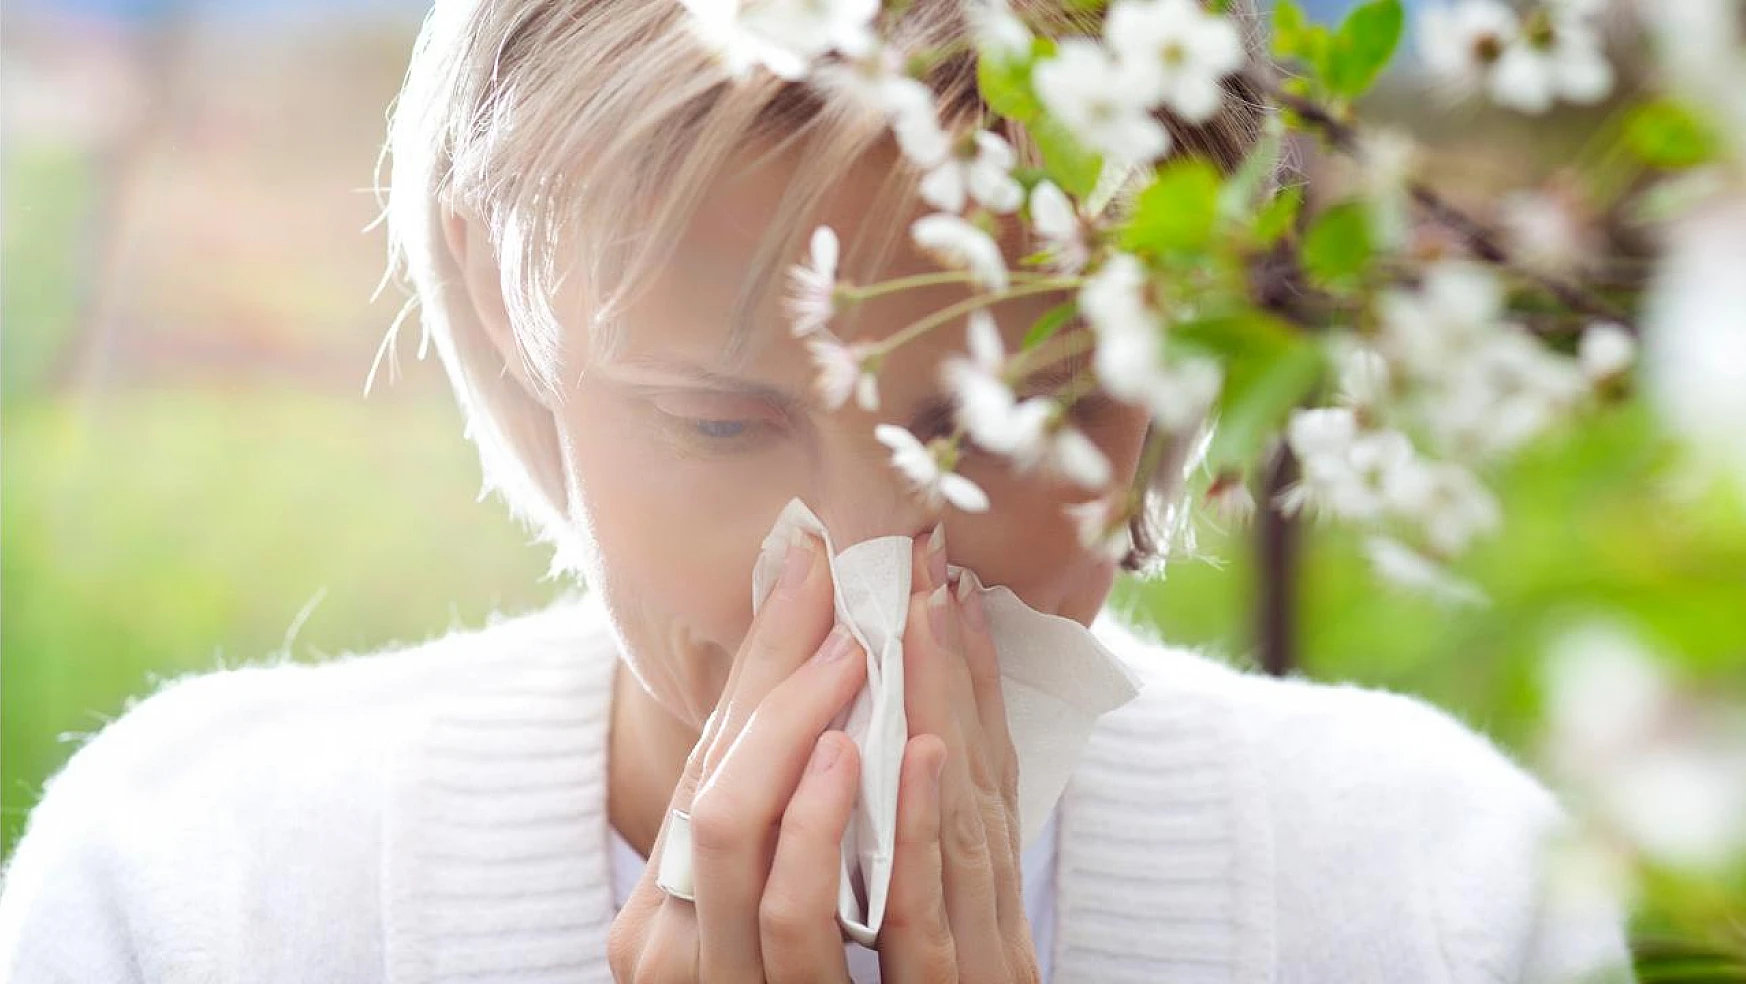 Baharla birlikte alerji mevsimi başlıyor